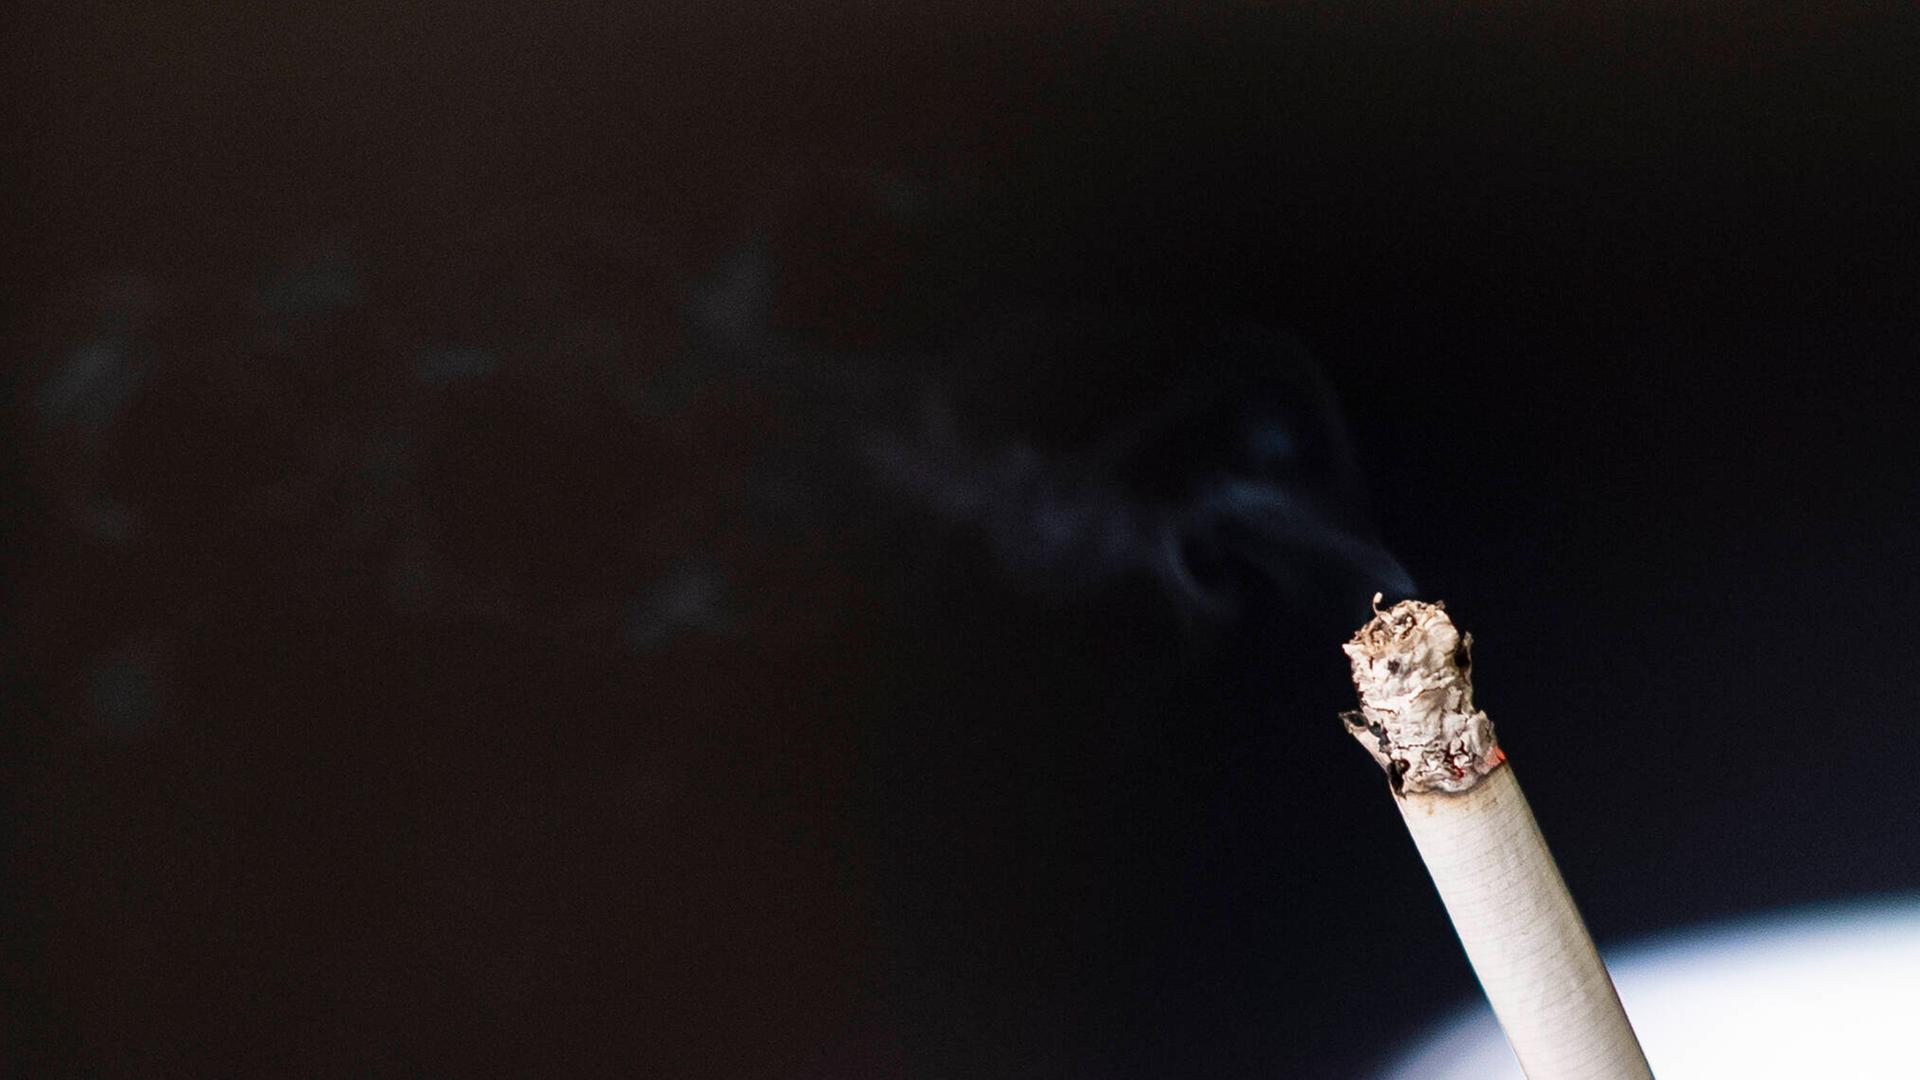 Eine brennende Zigarette mit kleiner Aschenspitze vor dunklem Hintergrund. Das Bild illustriert die Zunahme an Rauchern in Deutschland.